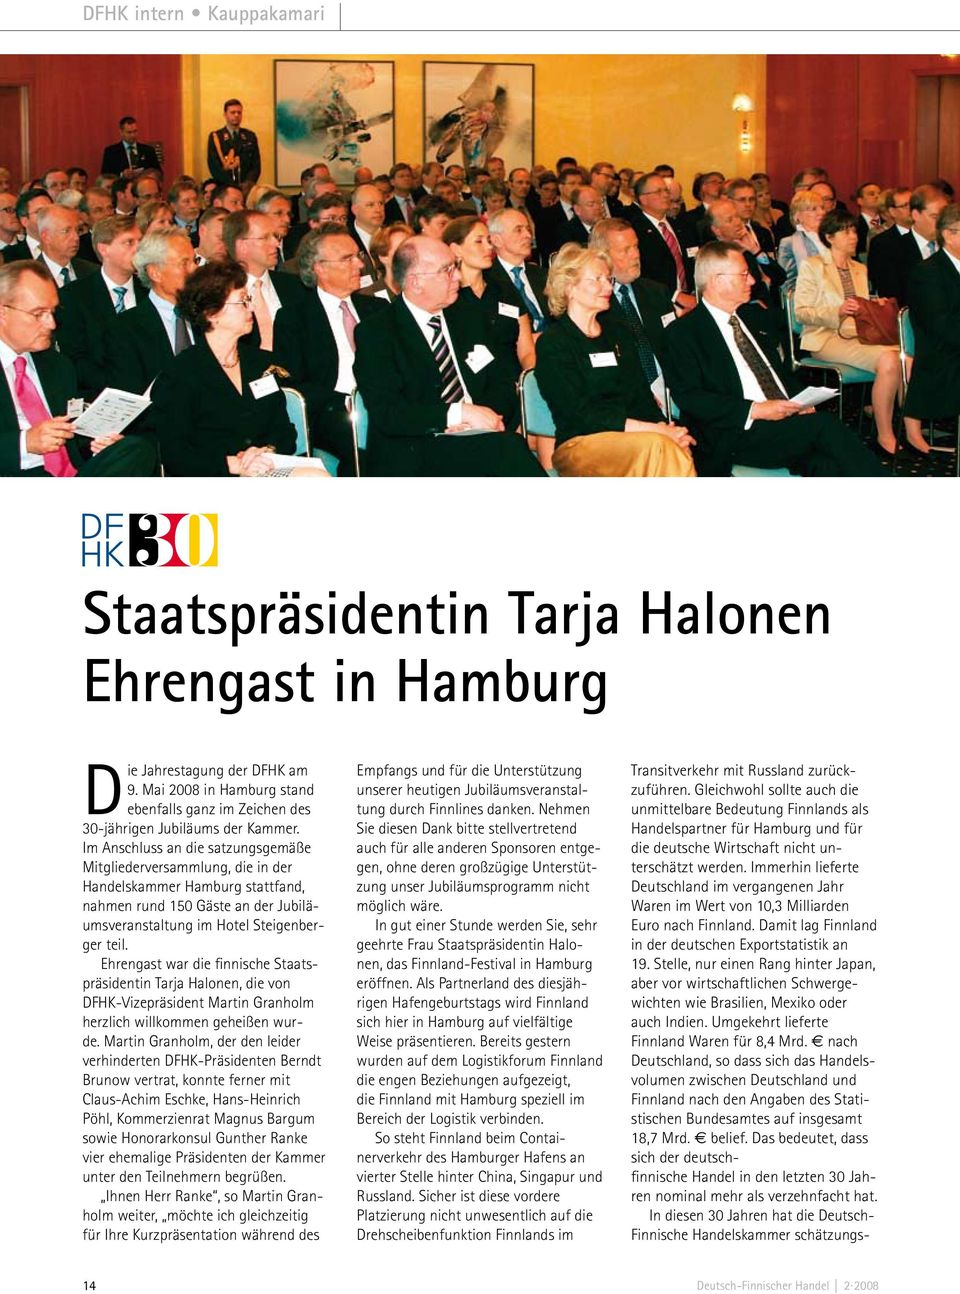 Ehrengast war die finnische Staatspräsidentin Tarja Halonen, die von DFHK-Vizepräsident Martin Granholm herzlich willkommen geheißen wurde.